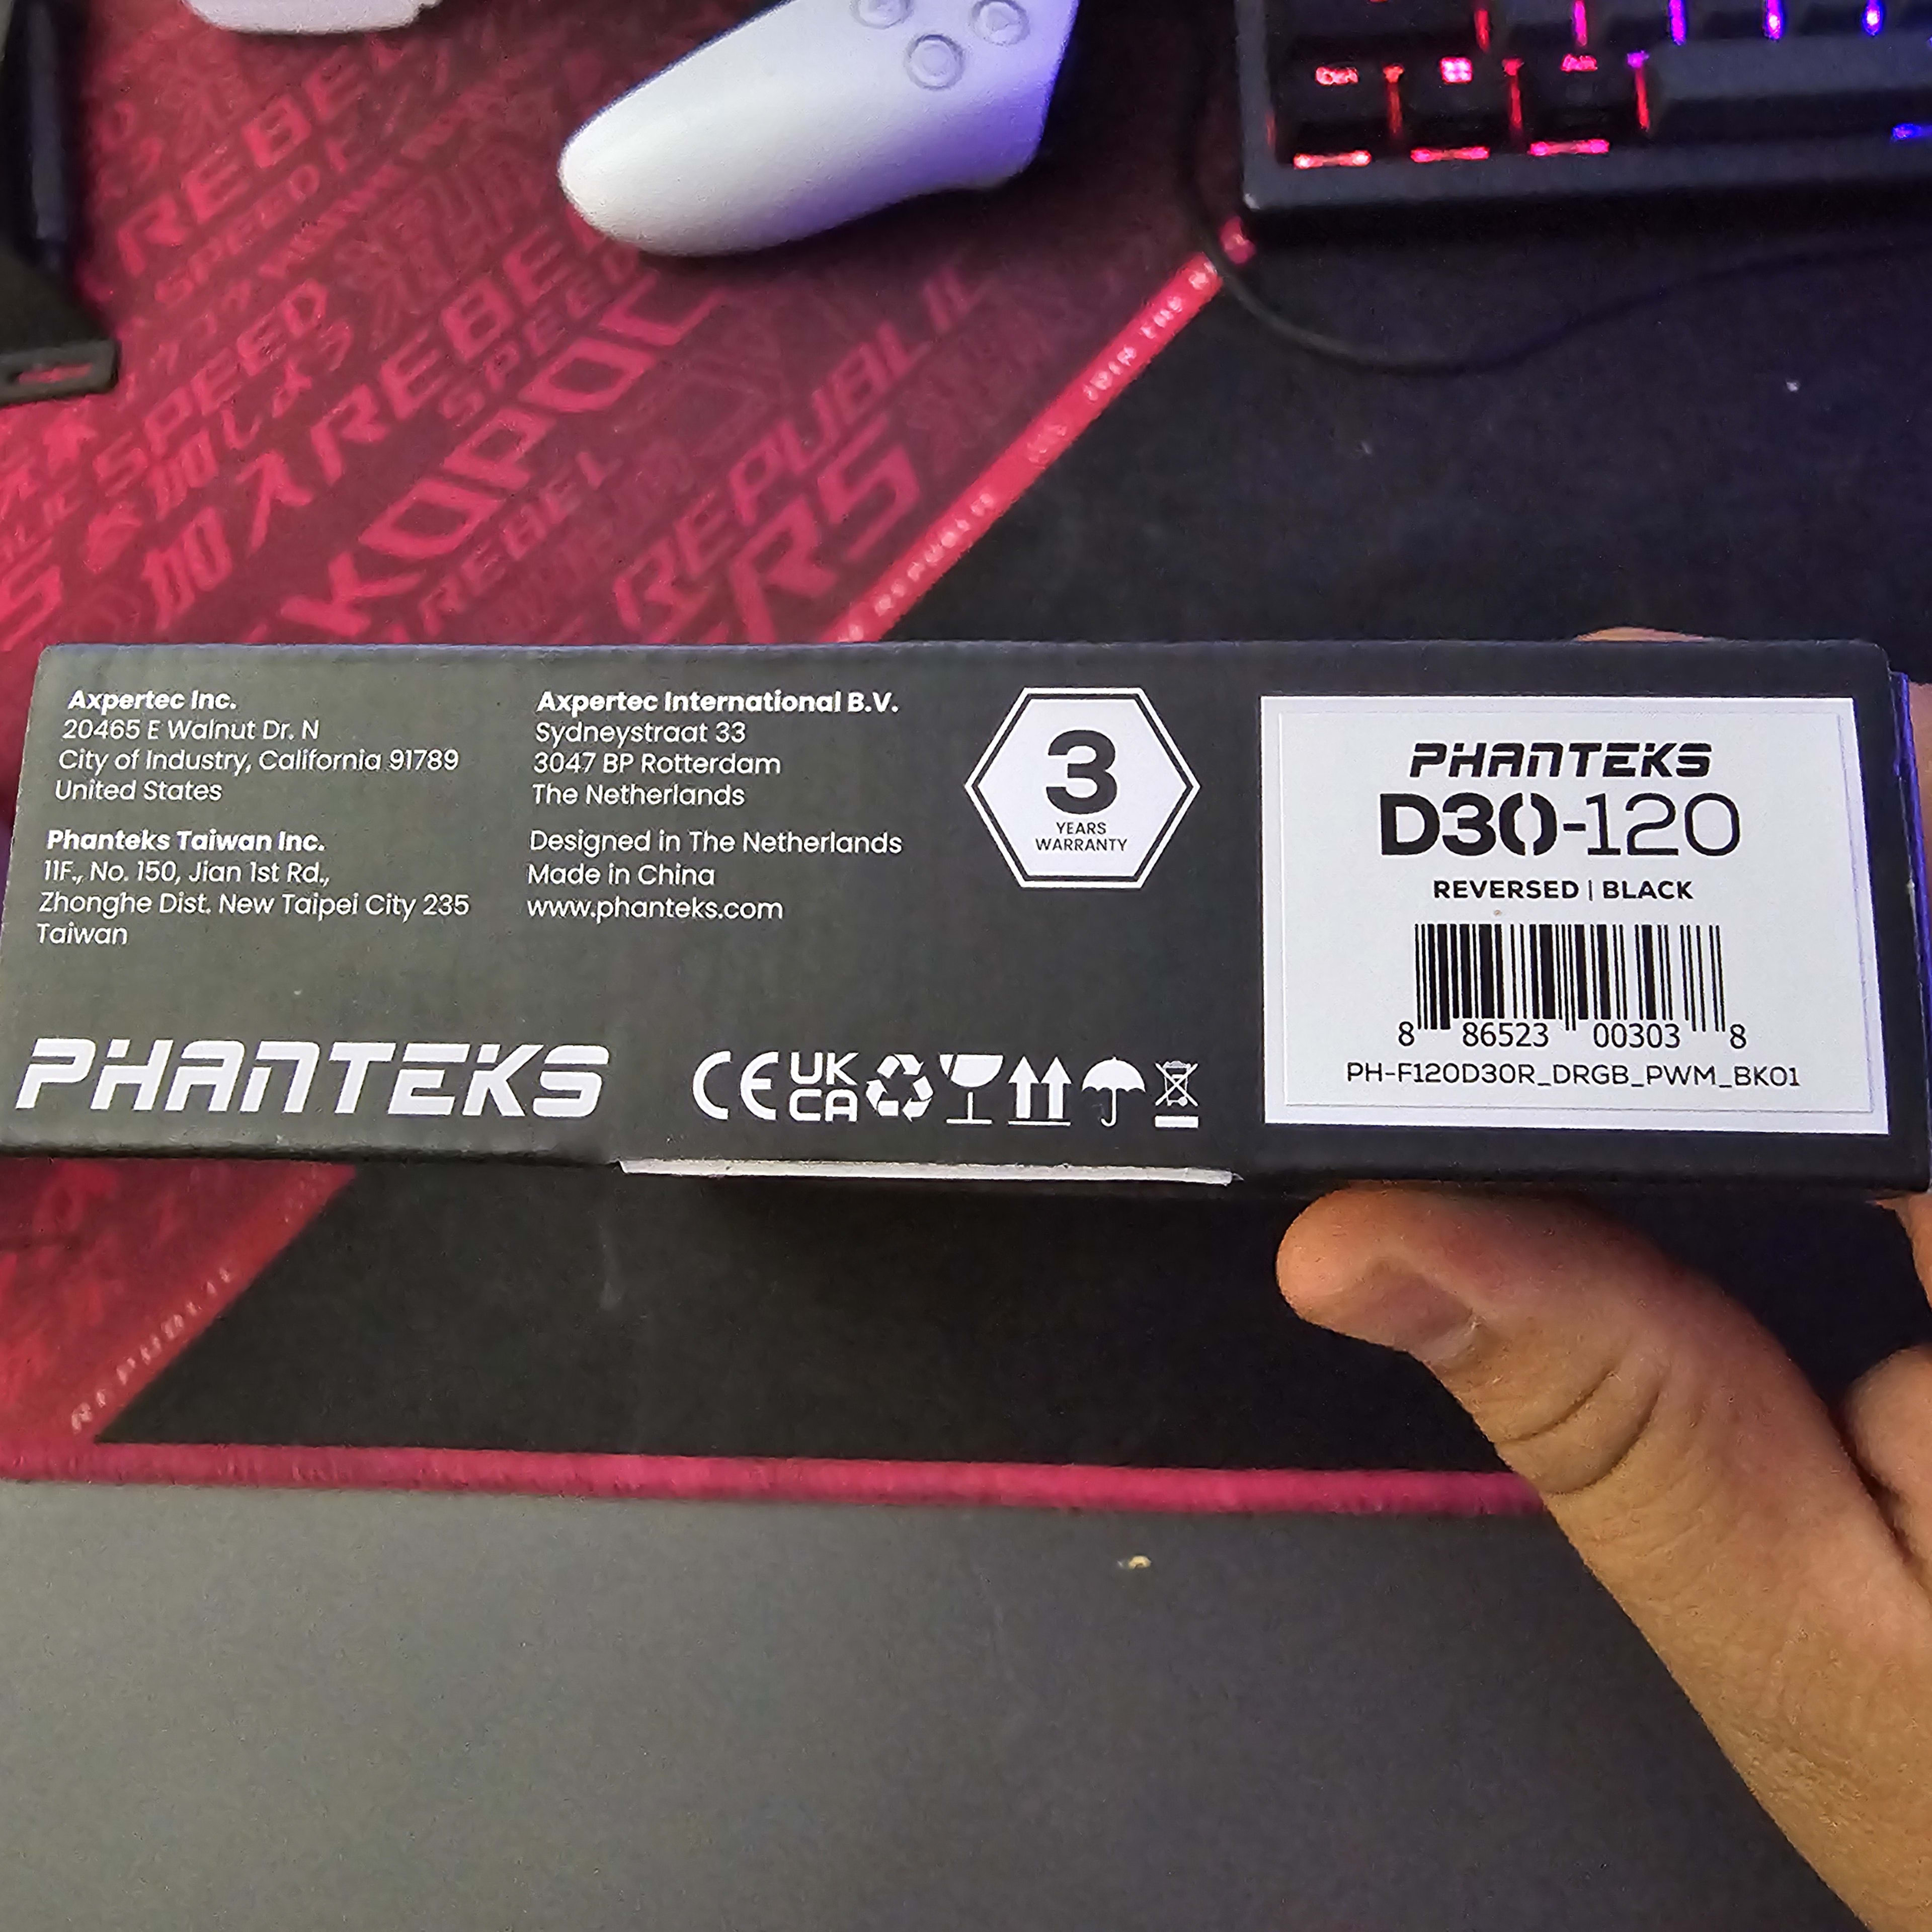 Phanteks D30-120 DRGB PWM Fan, Reverse Airflow Model, Premium Performance Fan, Black